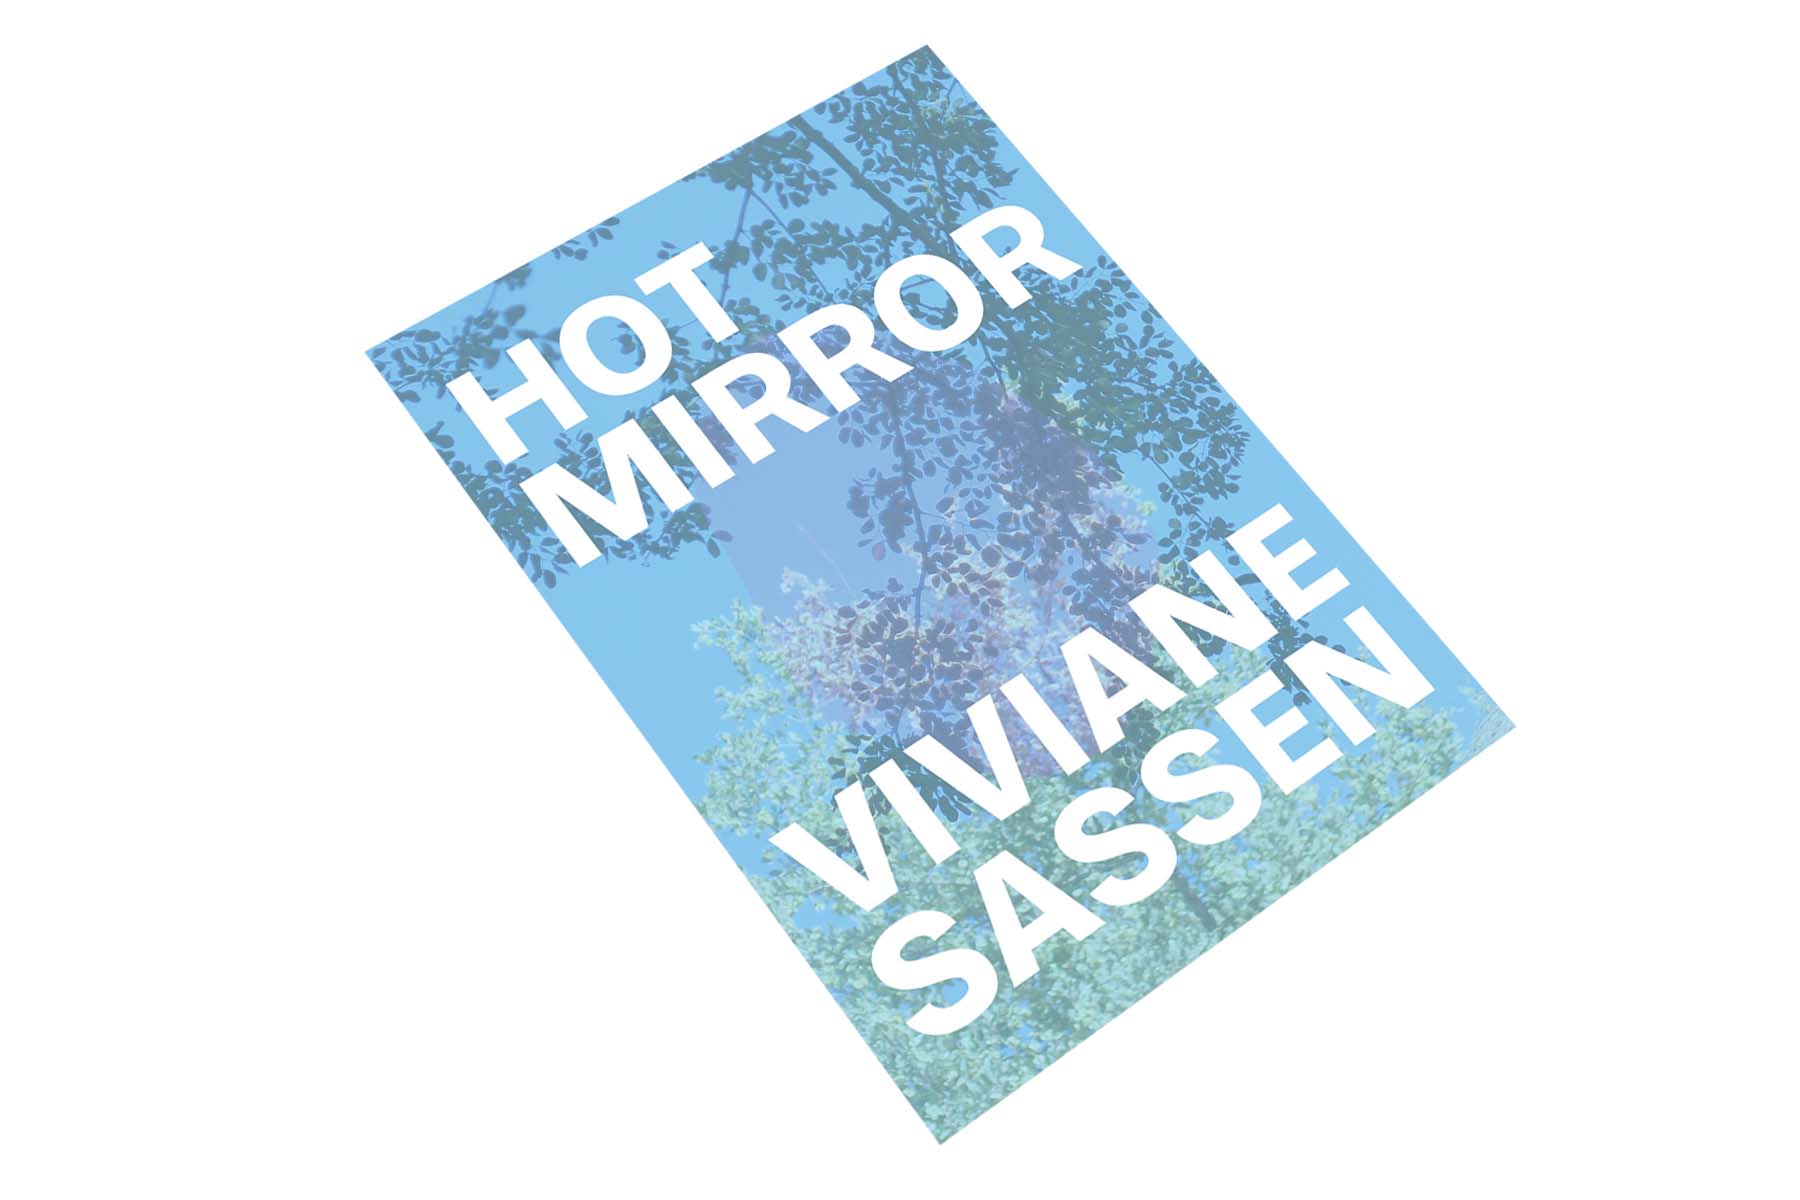 Viviane Sassen's Hot Mirror